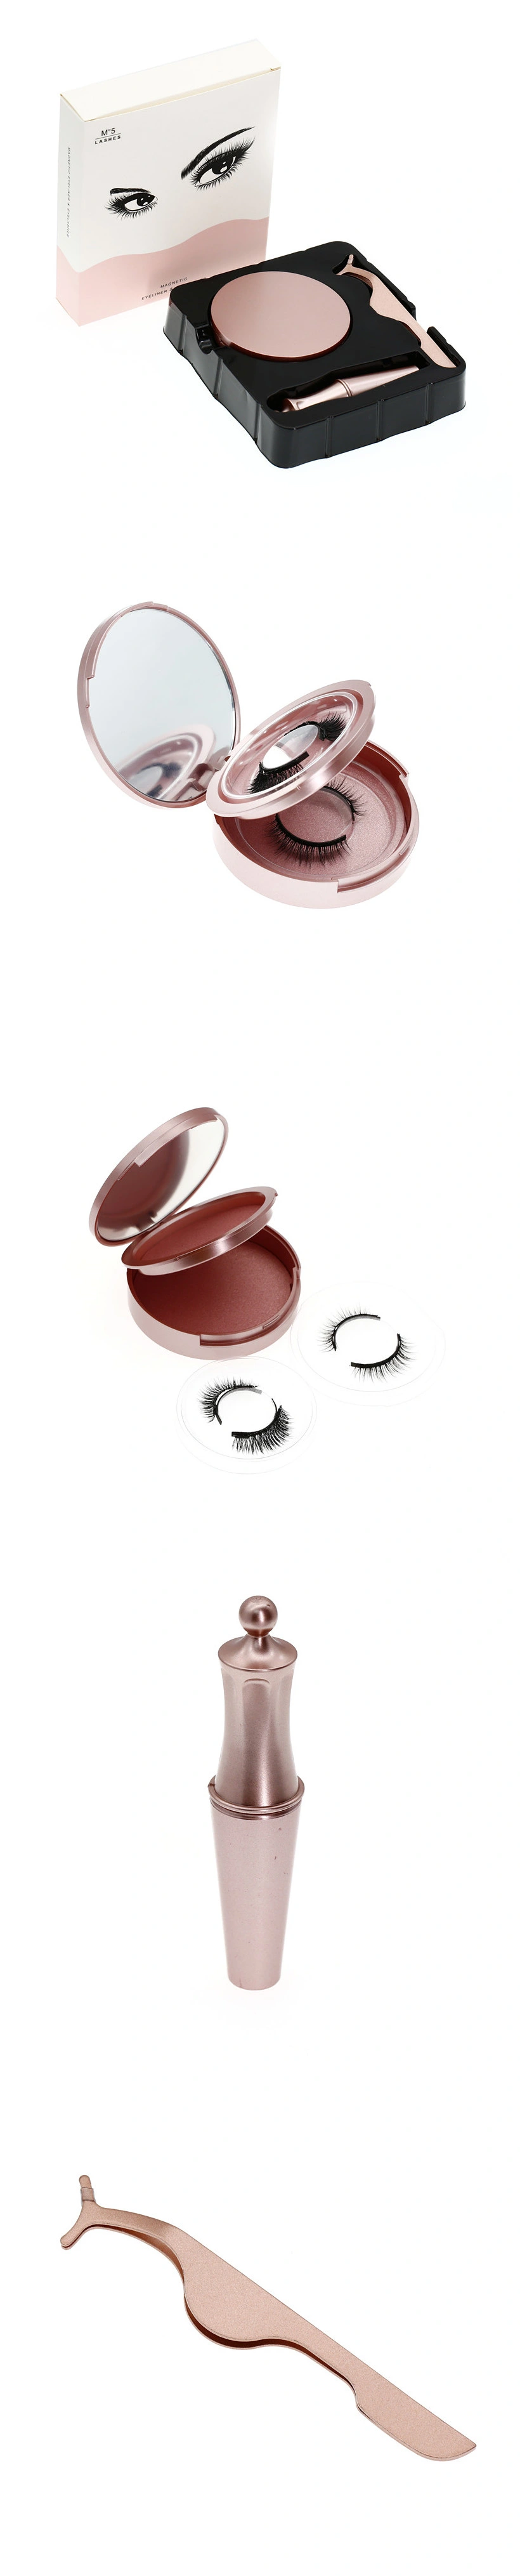 Wholesale Magnetic Eyelashes Extensions Private Label 5 Magnet Mink Magnetic Eyelashes with Eyeliner Eyelashes